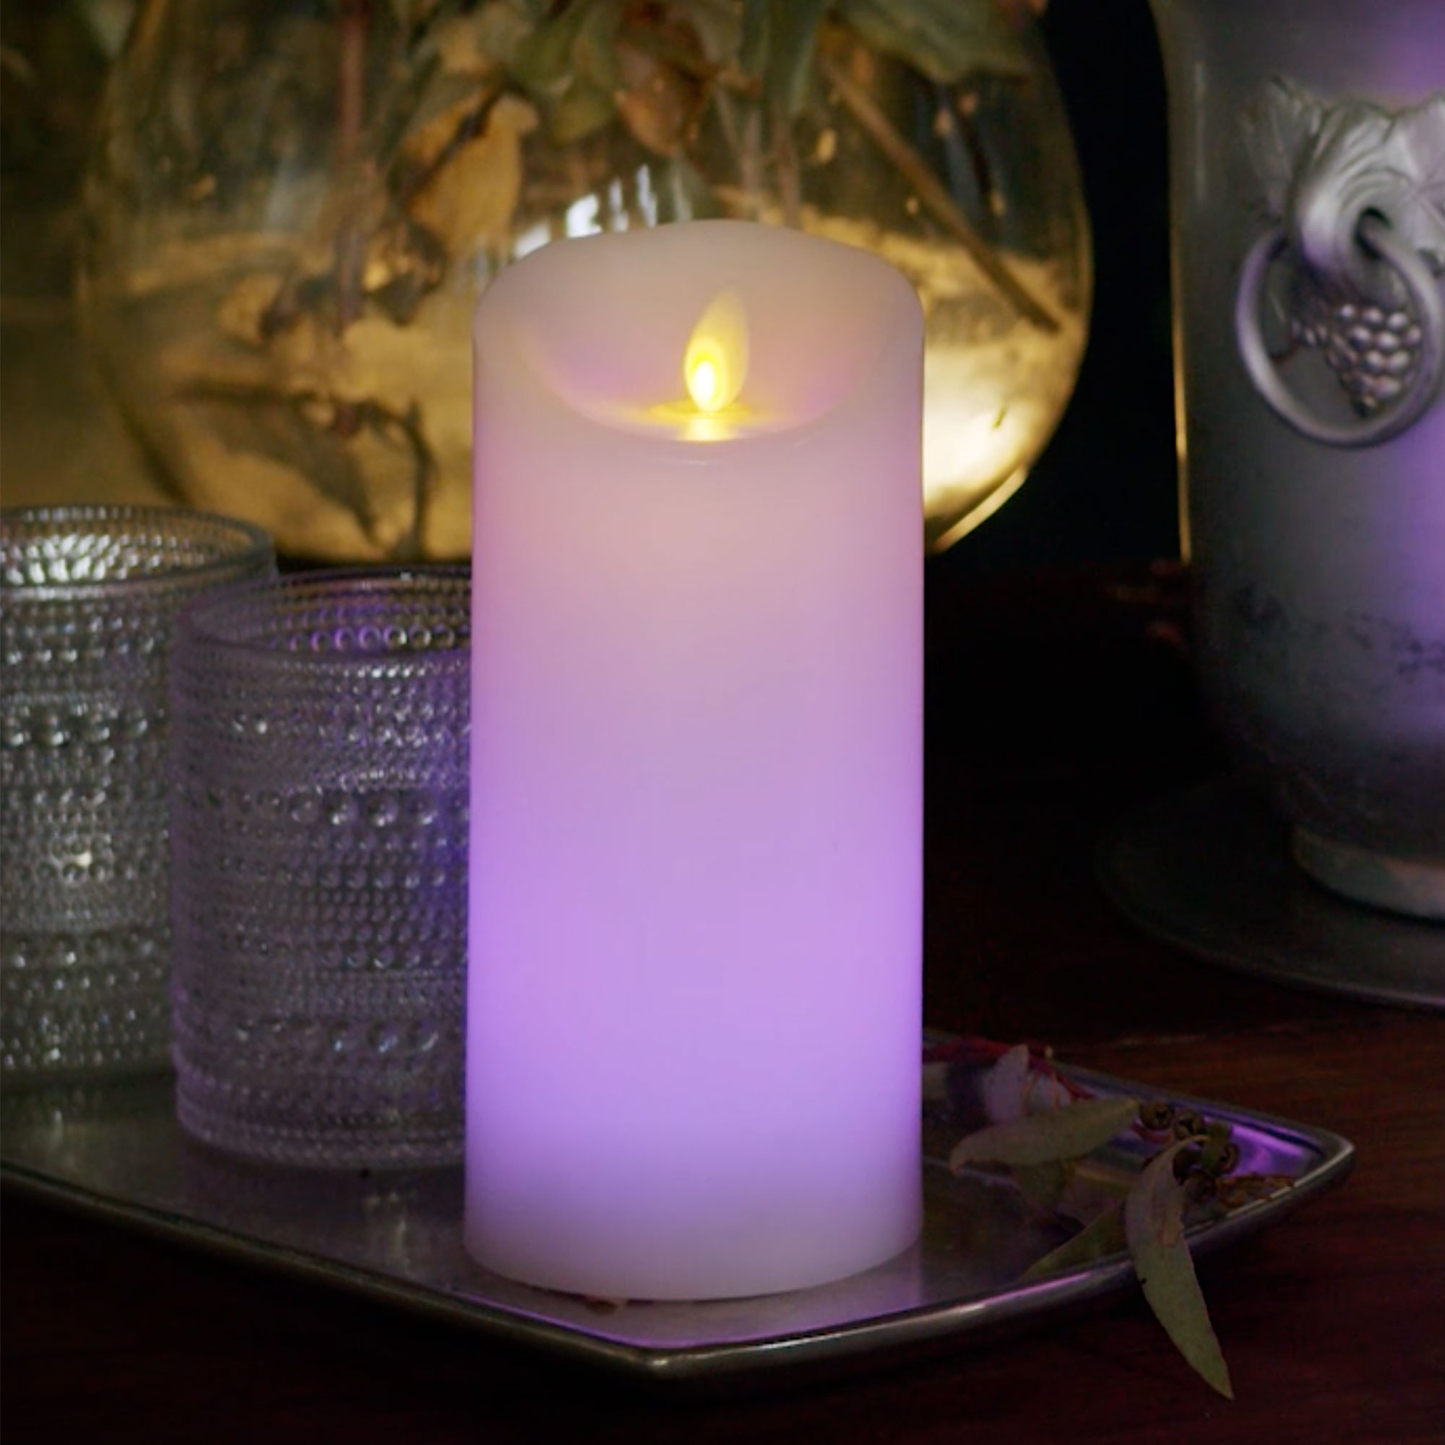 Luminara's color changing candles